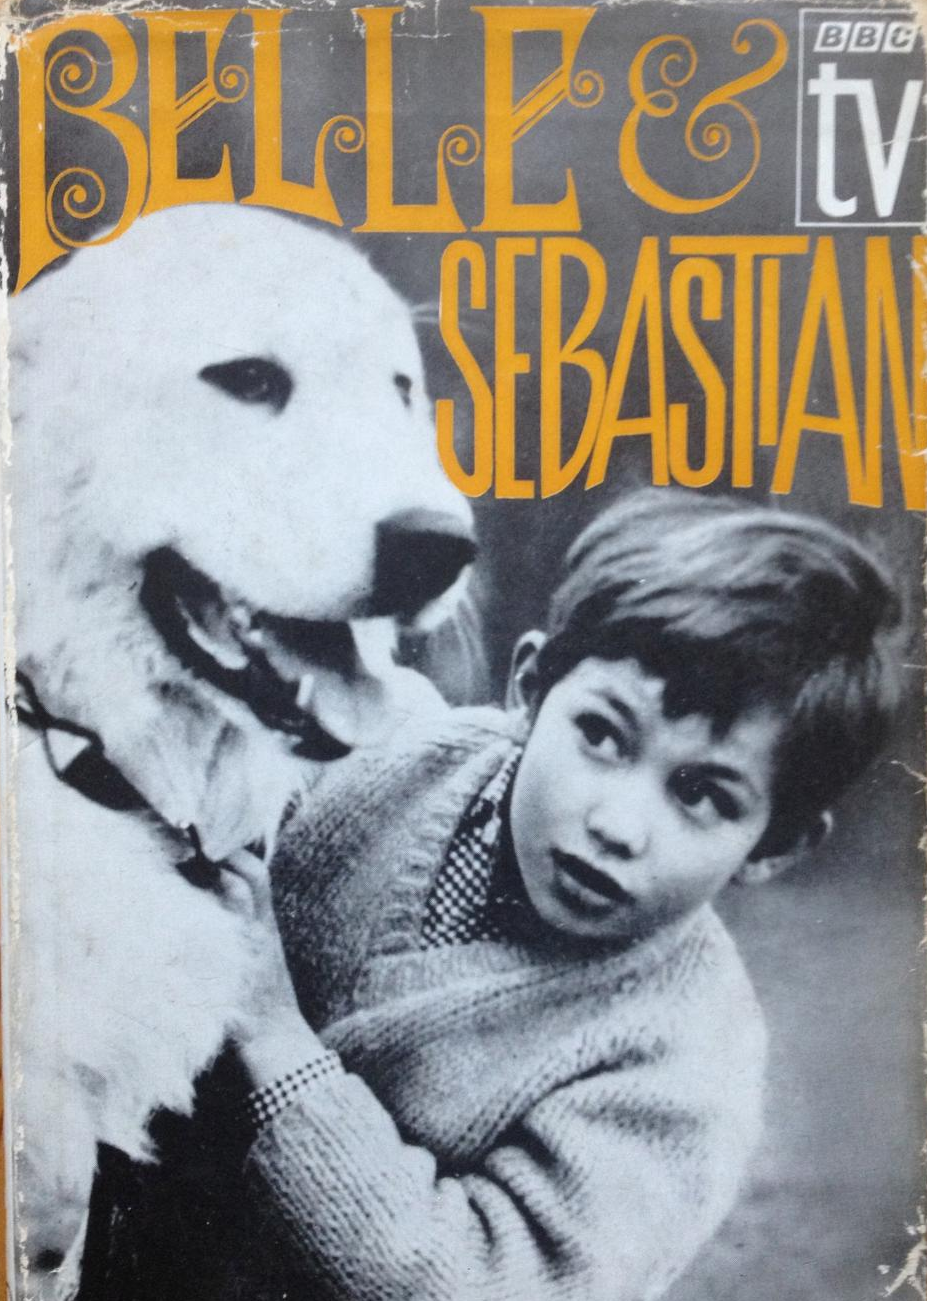 Belle And Sebastian (BBC1, 1967).